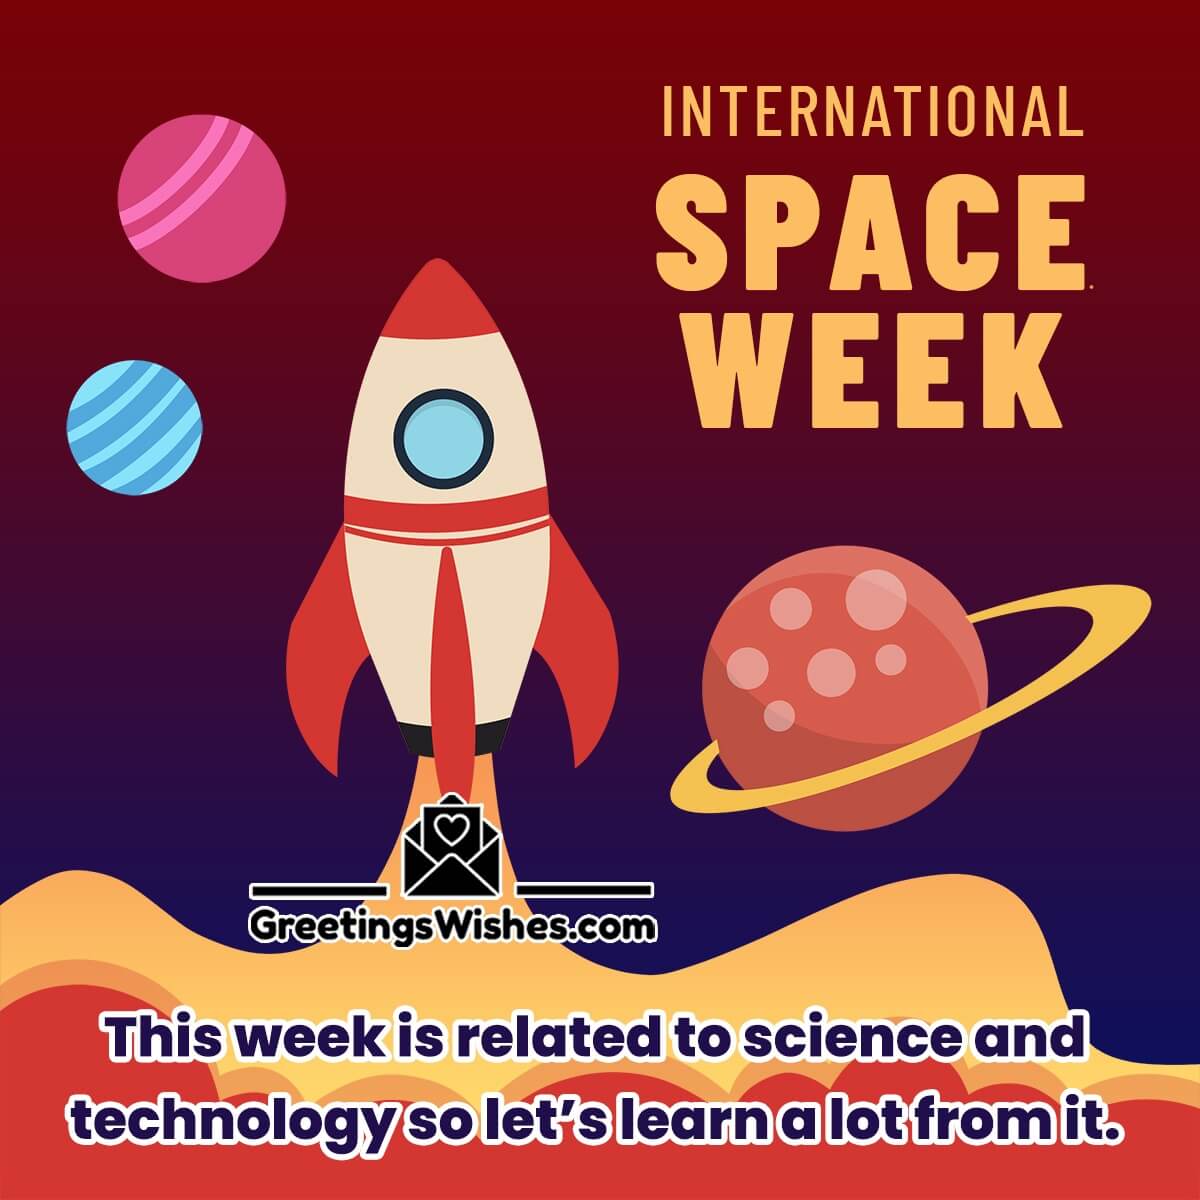 International Space Week Image